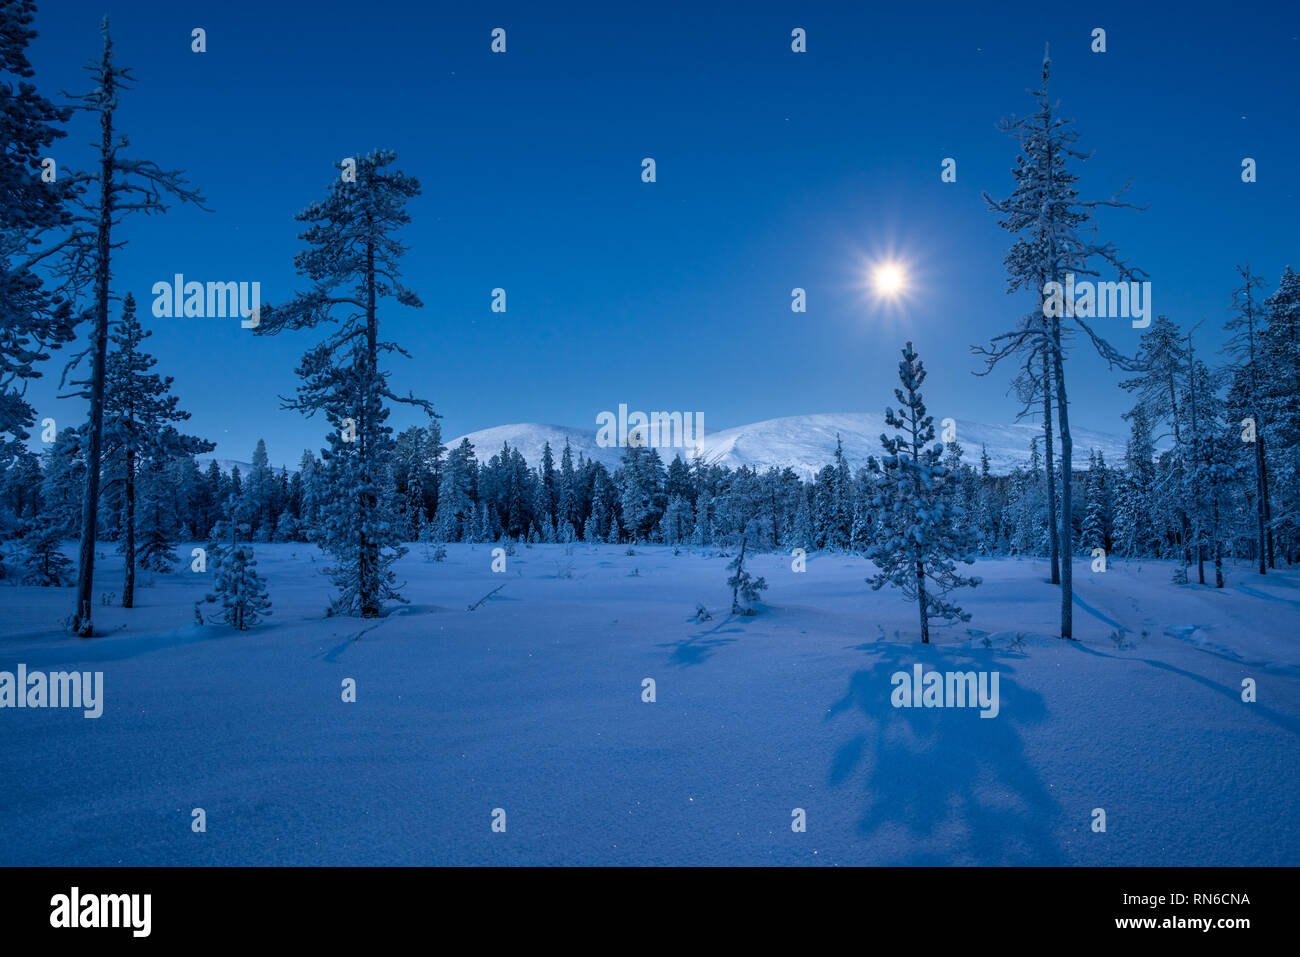 Pallas montagnes à lune avec de longues ombres des sapins et de la neige fraîche dans le Parc National de Pallas-Ylläs Tunturi à Muonio, Finlande Banque D'Images